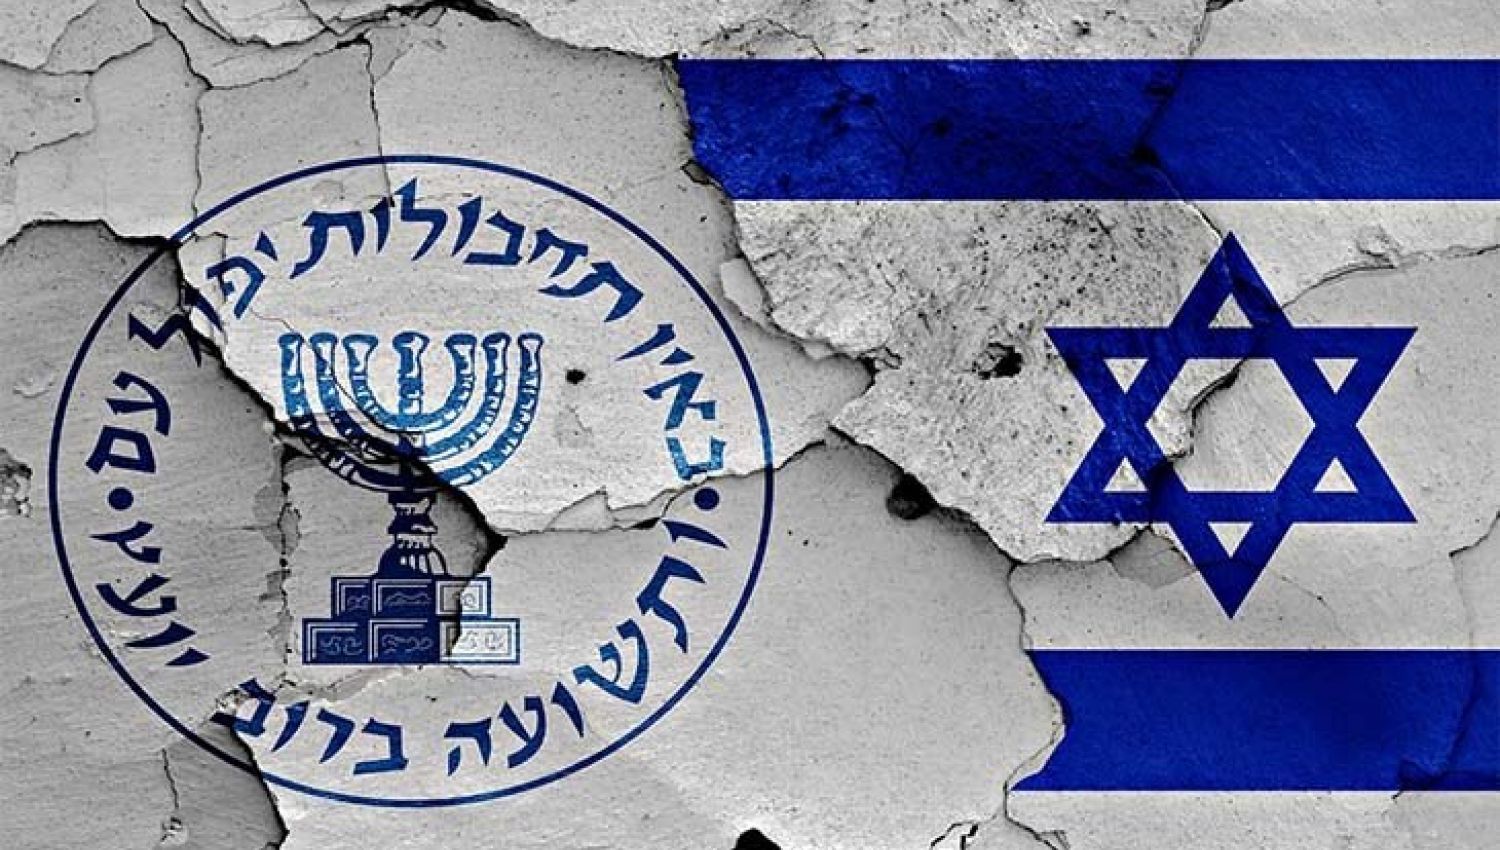 الاعلام العبري: الاستخبارات الإسرائيلية عديمة الفائدة!